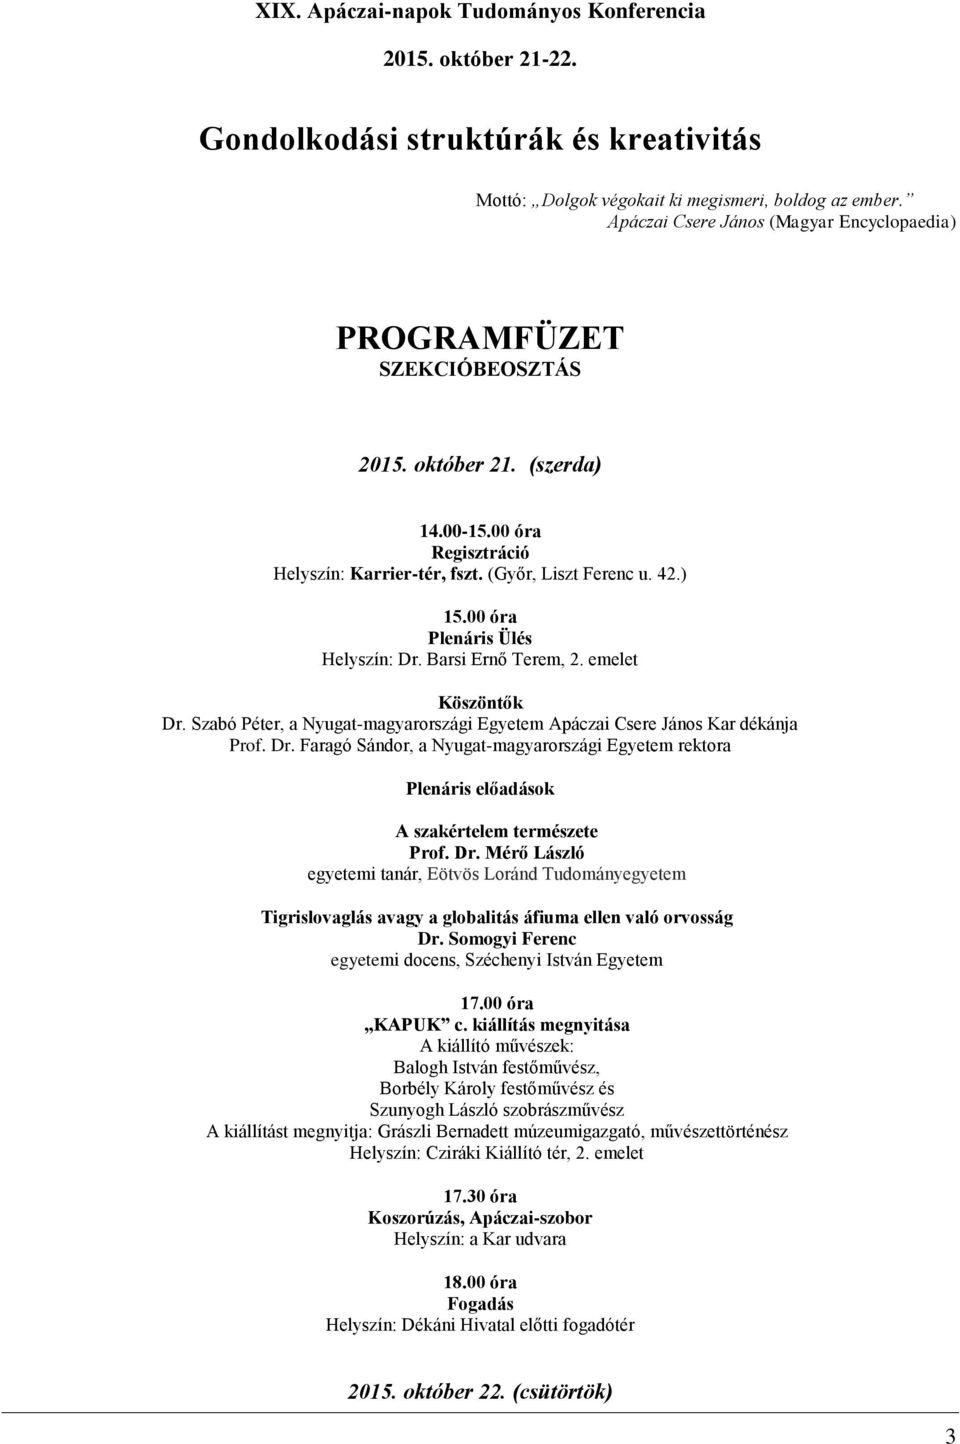 Nyugat-magyarországi Egyetem Apáczai Csere János Kar. XIX. Apáczai-napok  Nemzetközi Tudományos Konferencia. Gondolkodási struktúrák és kreativitás -  PDF Ingyenes letöltés